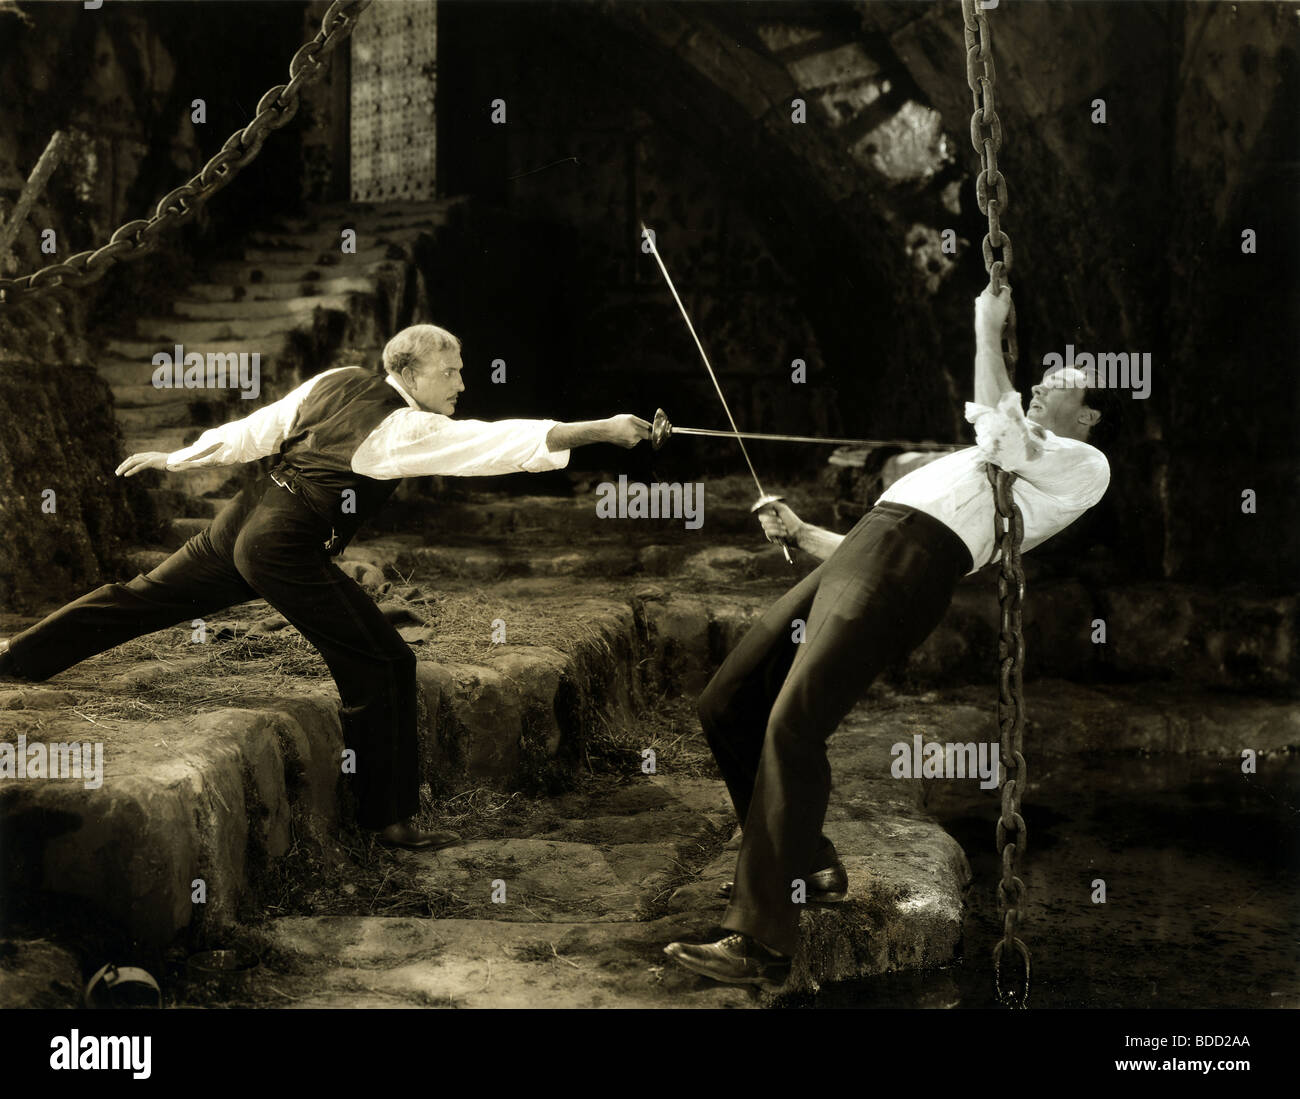 Dos hombres luchando duelo en el castillo Foto de stock